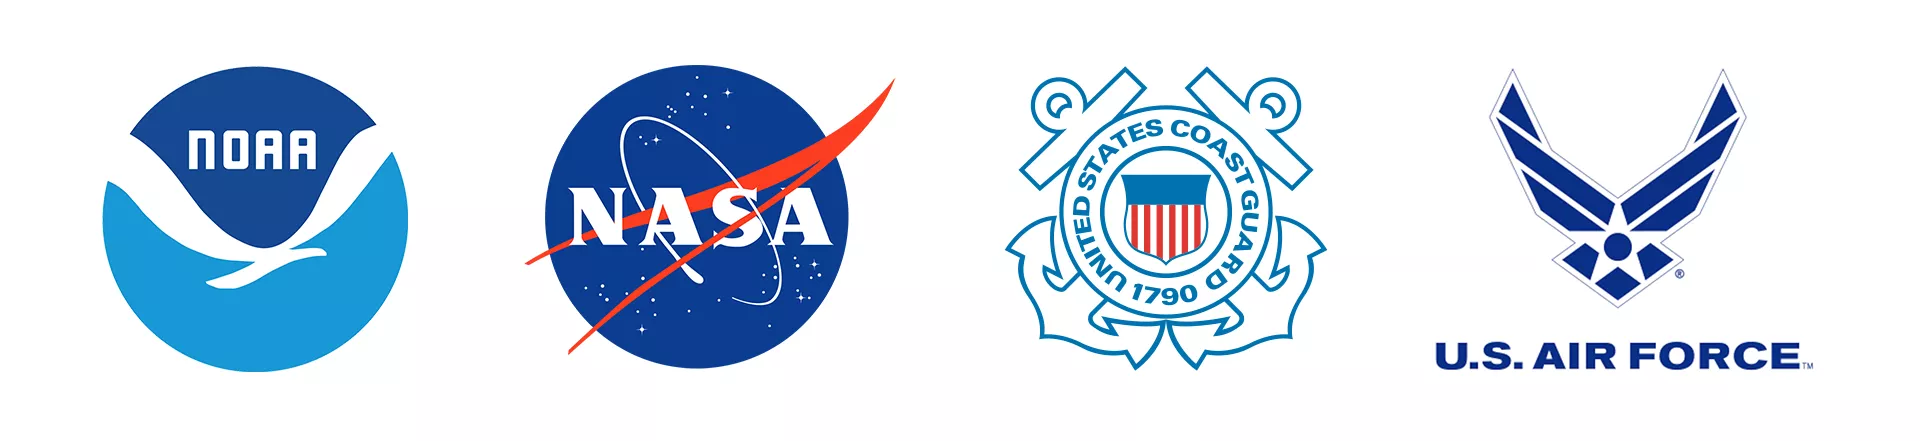 Emblems of the SARSAT agencies: NOAA, NASA, Coast Guard, and Air Force